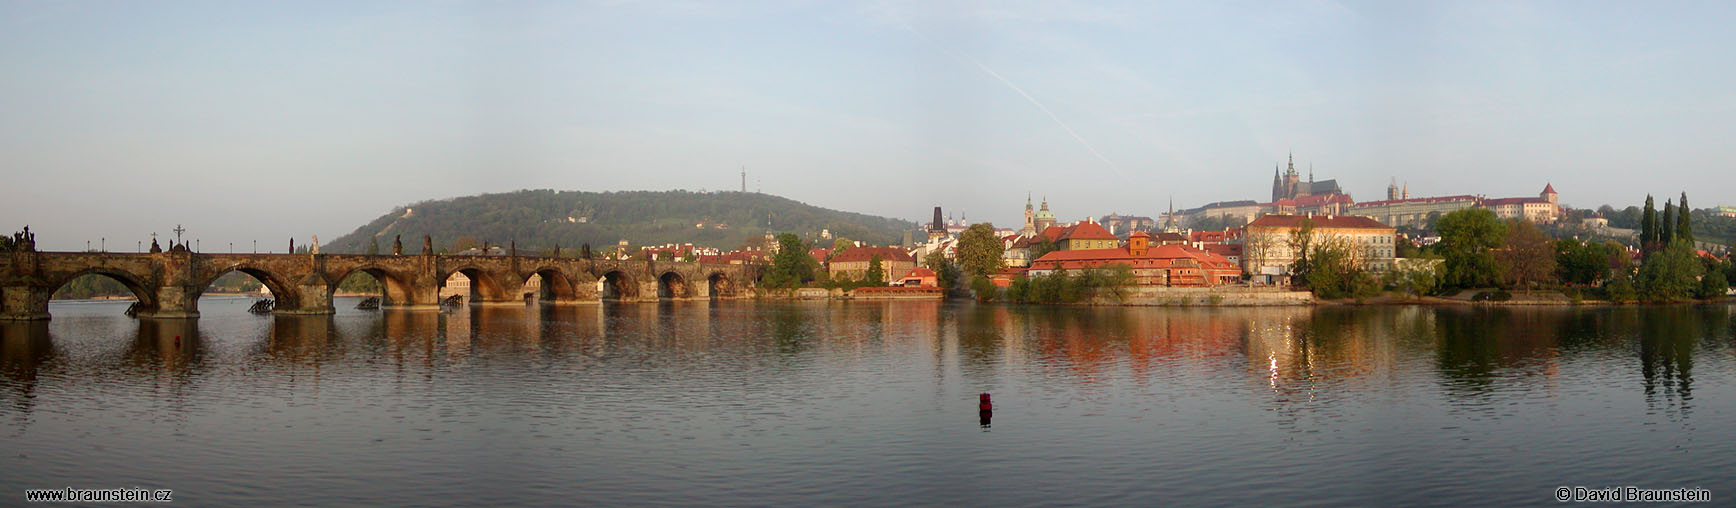 2002_05_04_03_ph_karluv_most_prazsky_hrad